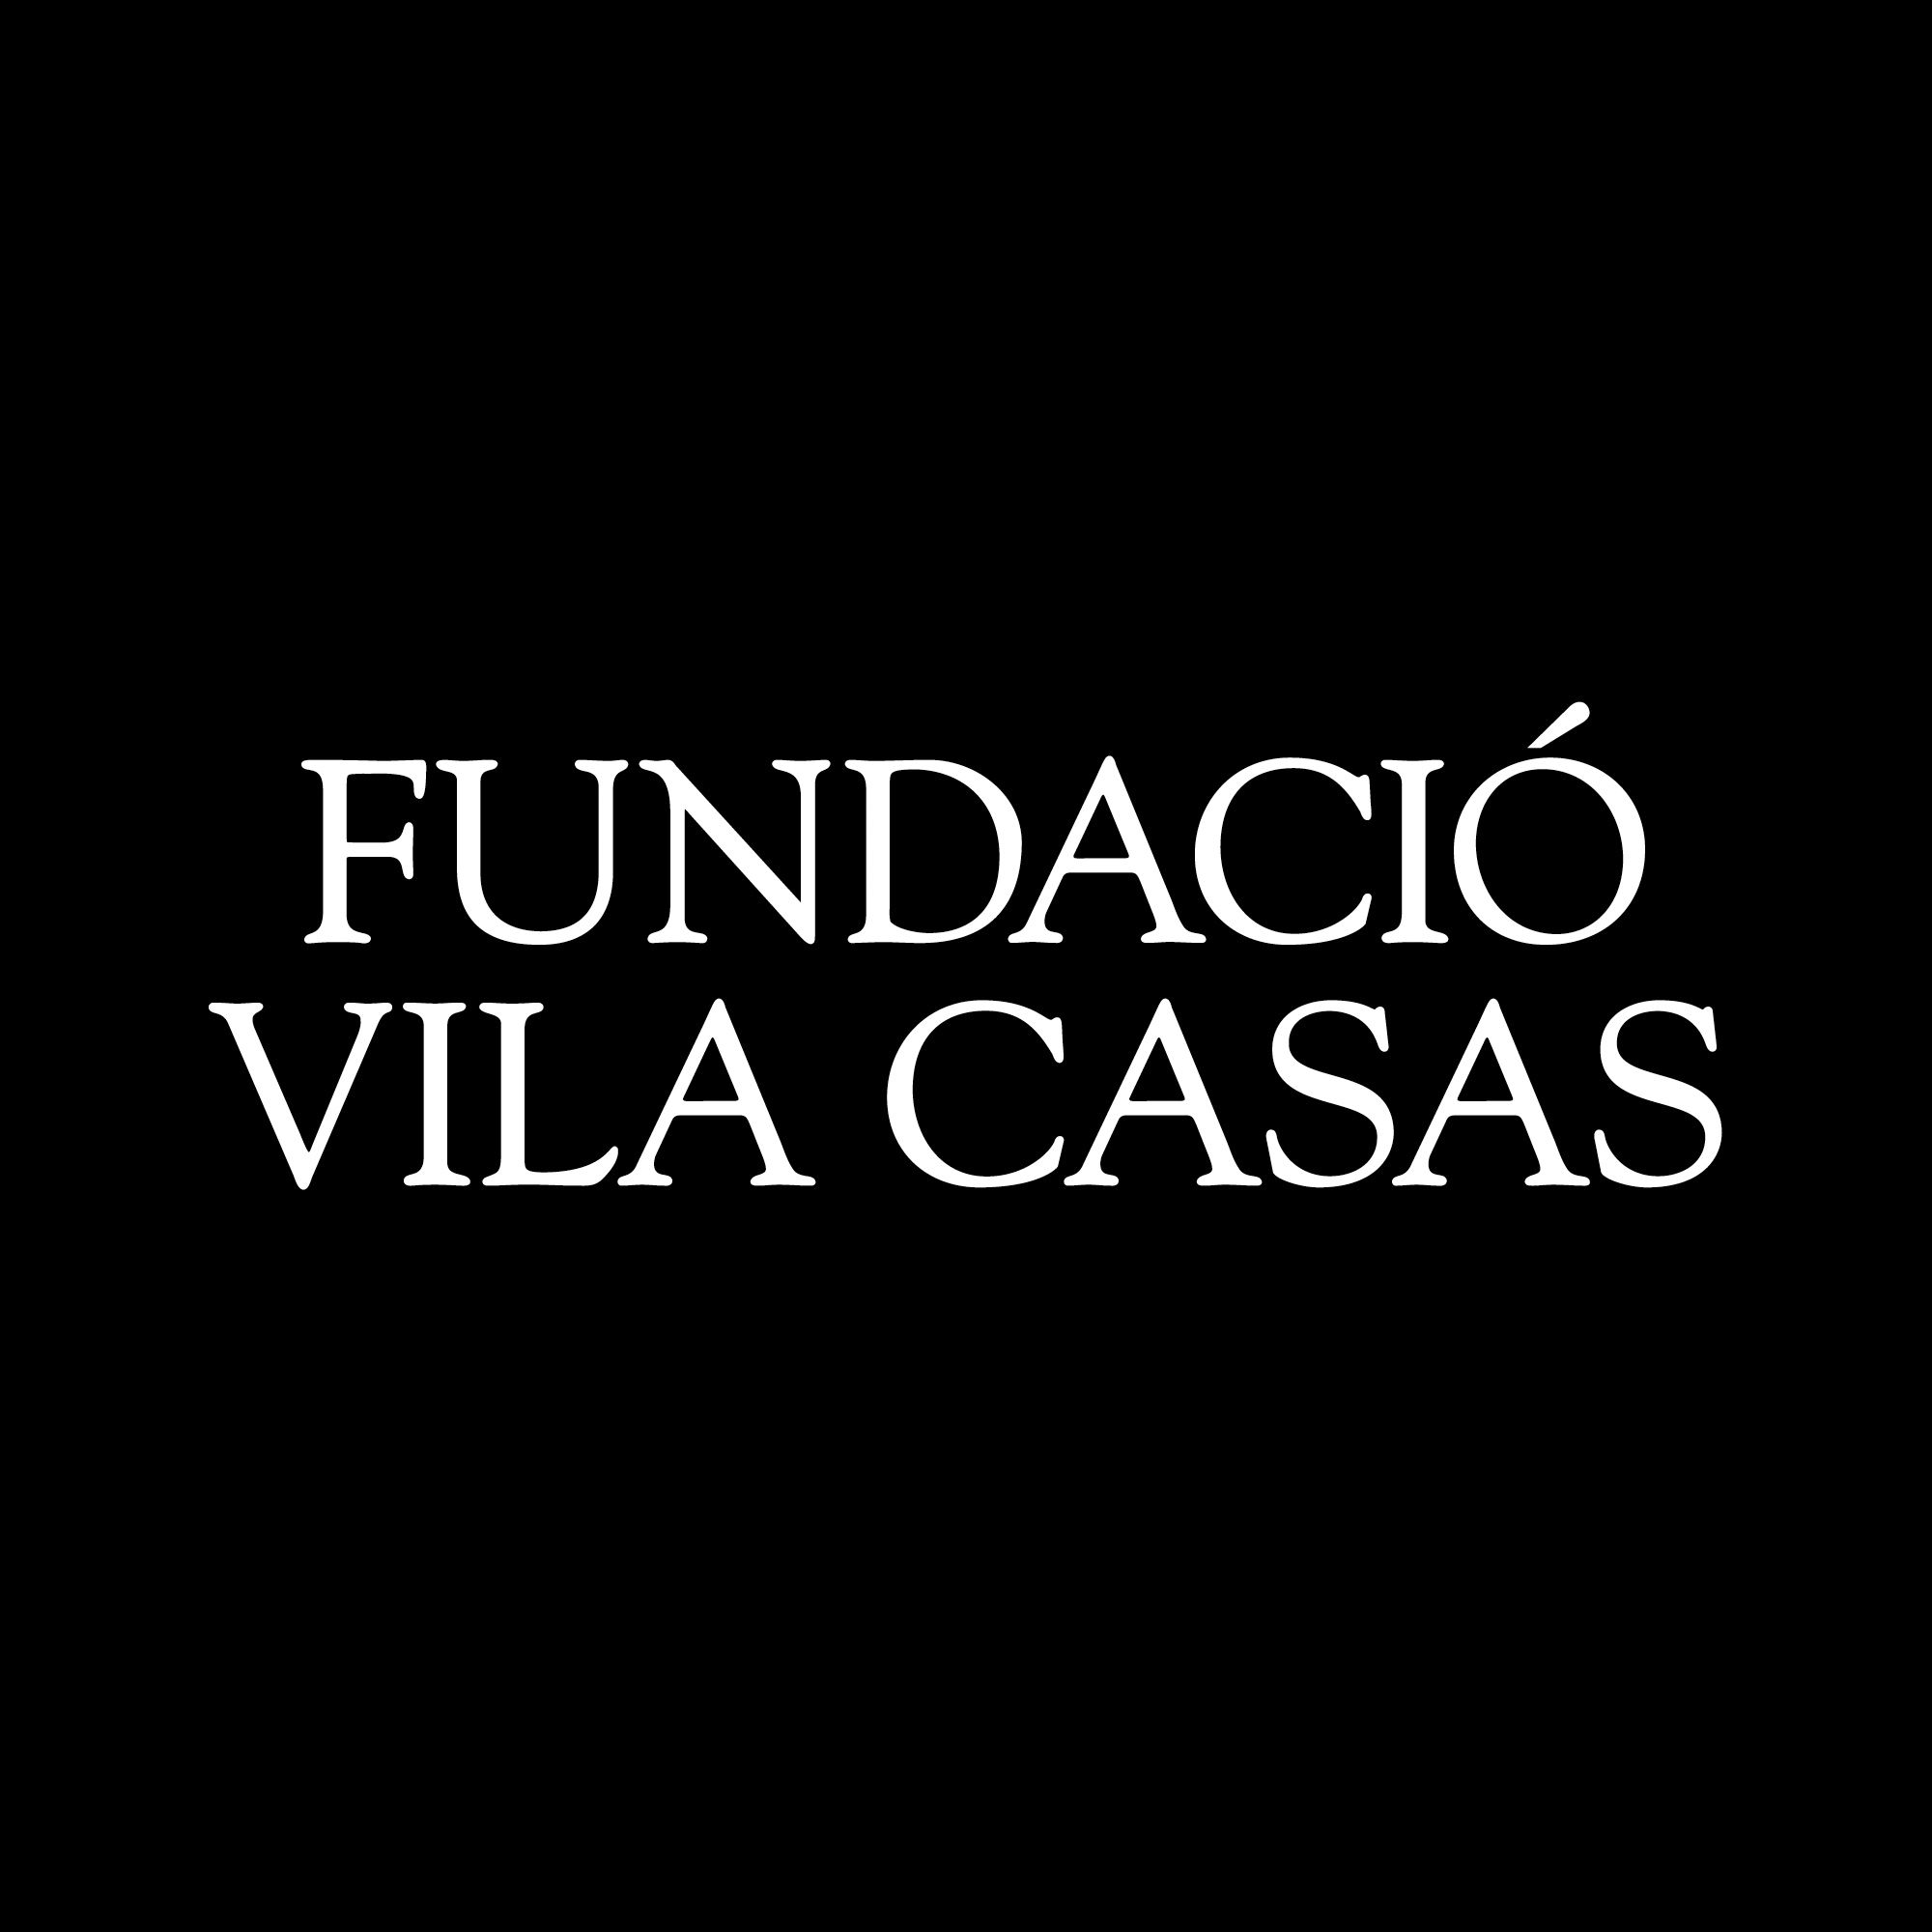 FUNDACIO PRIVADA ANTONI VILA CASAS